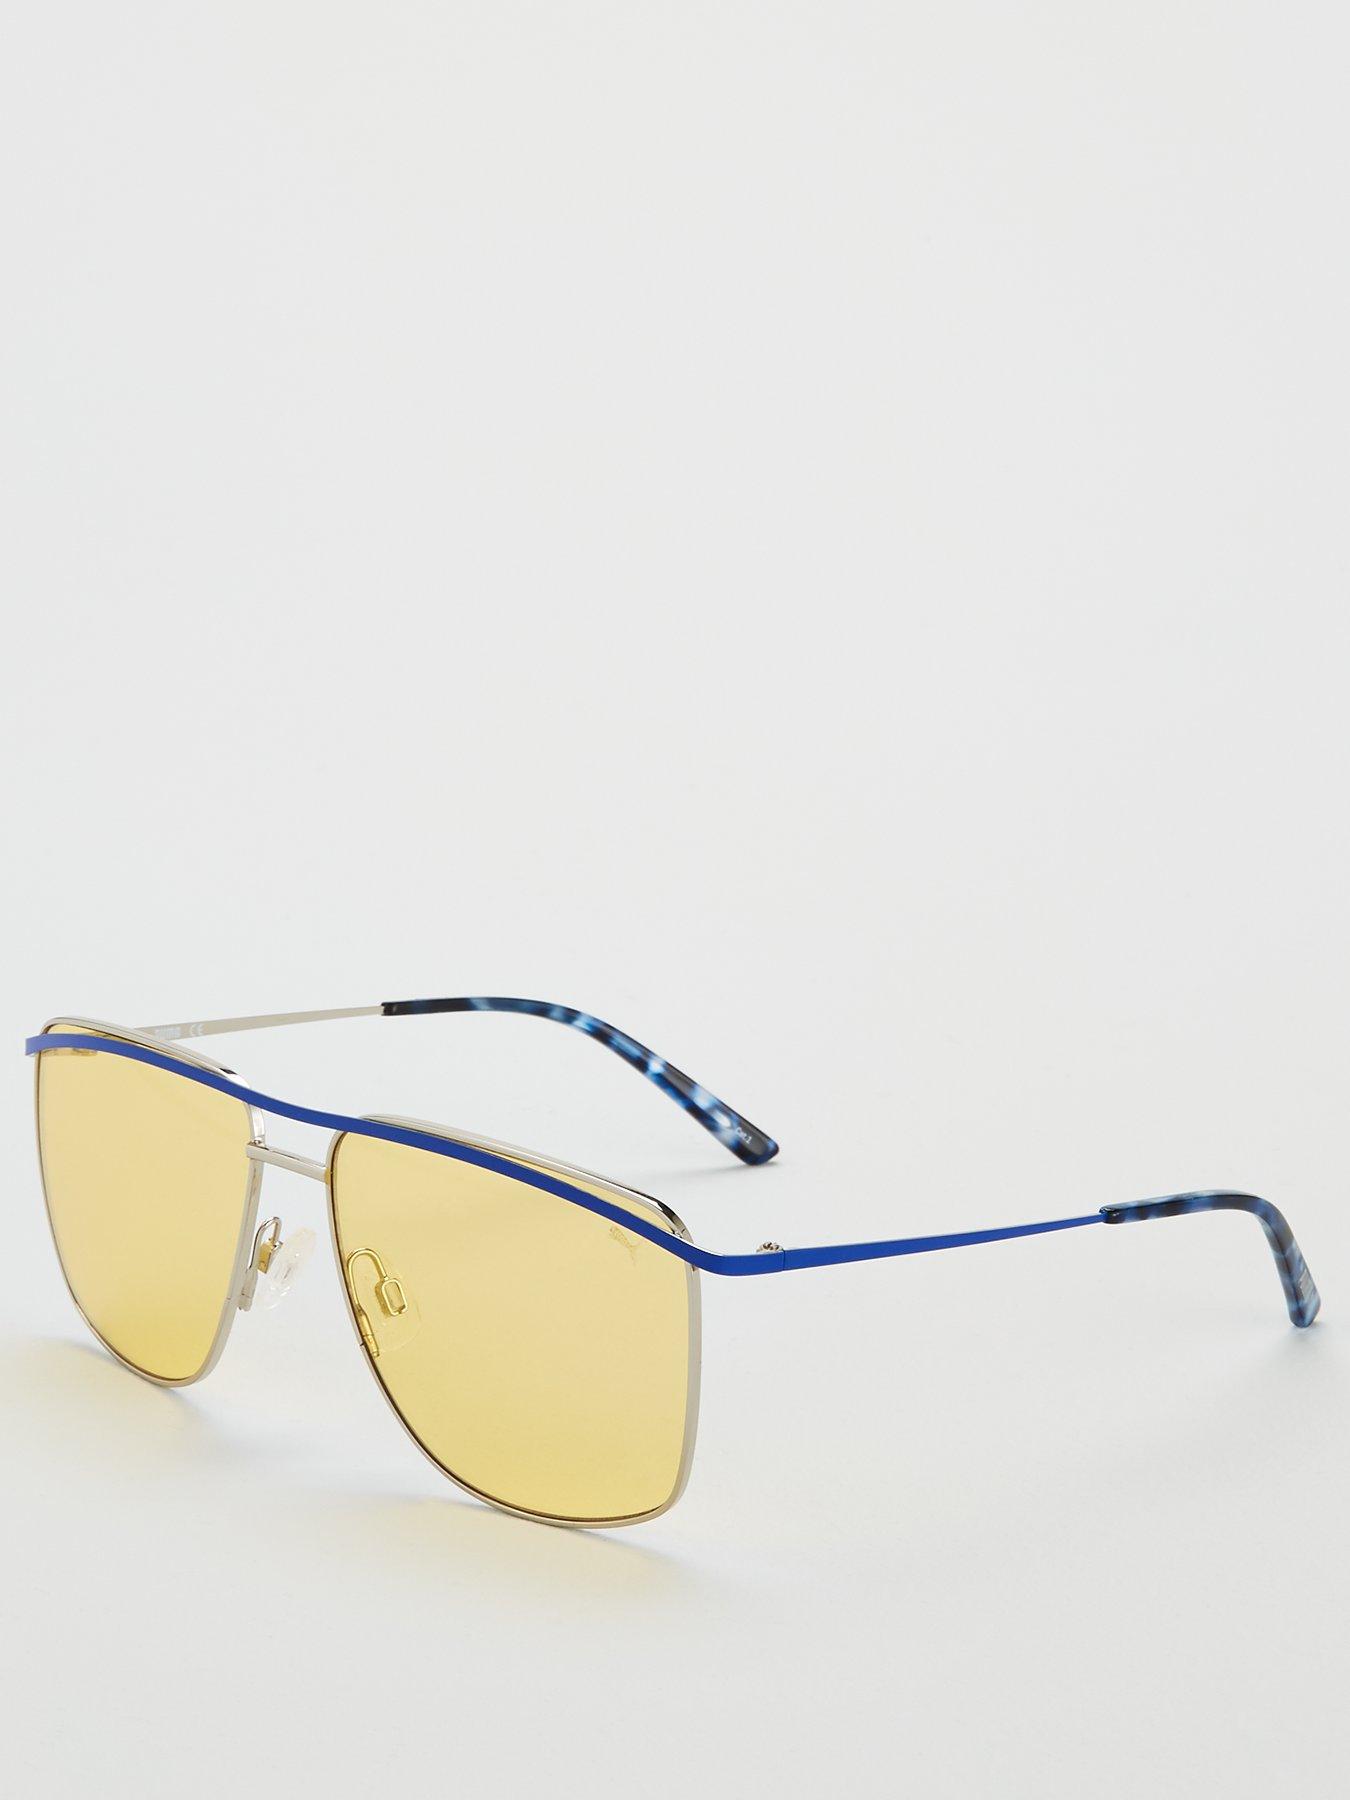 puma aviator sunglasses